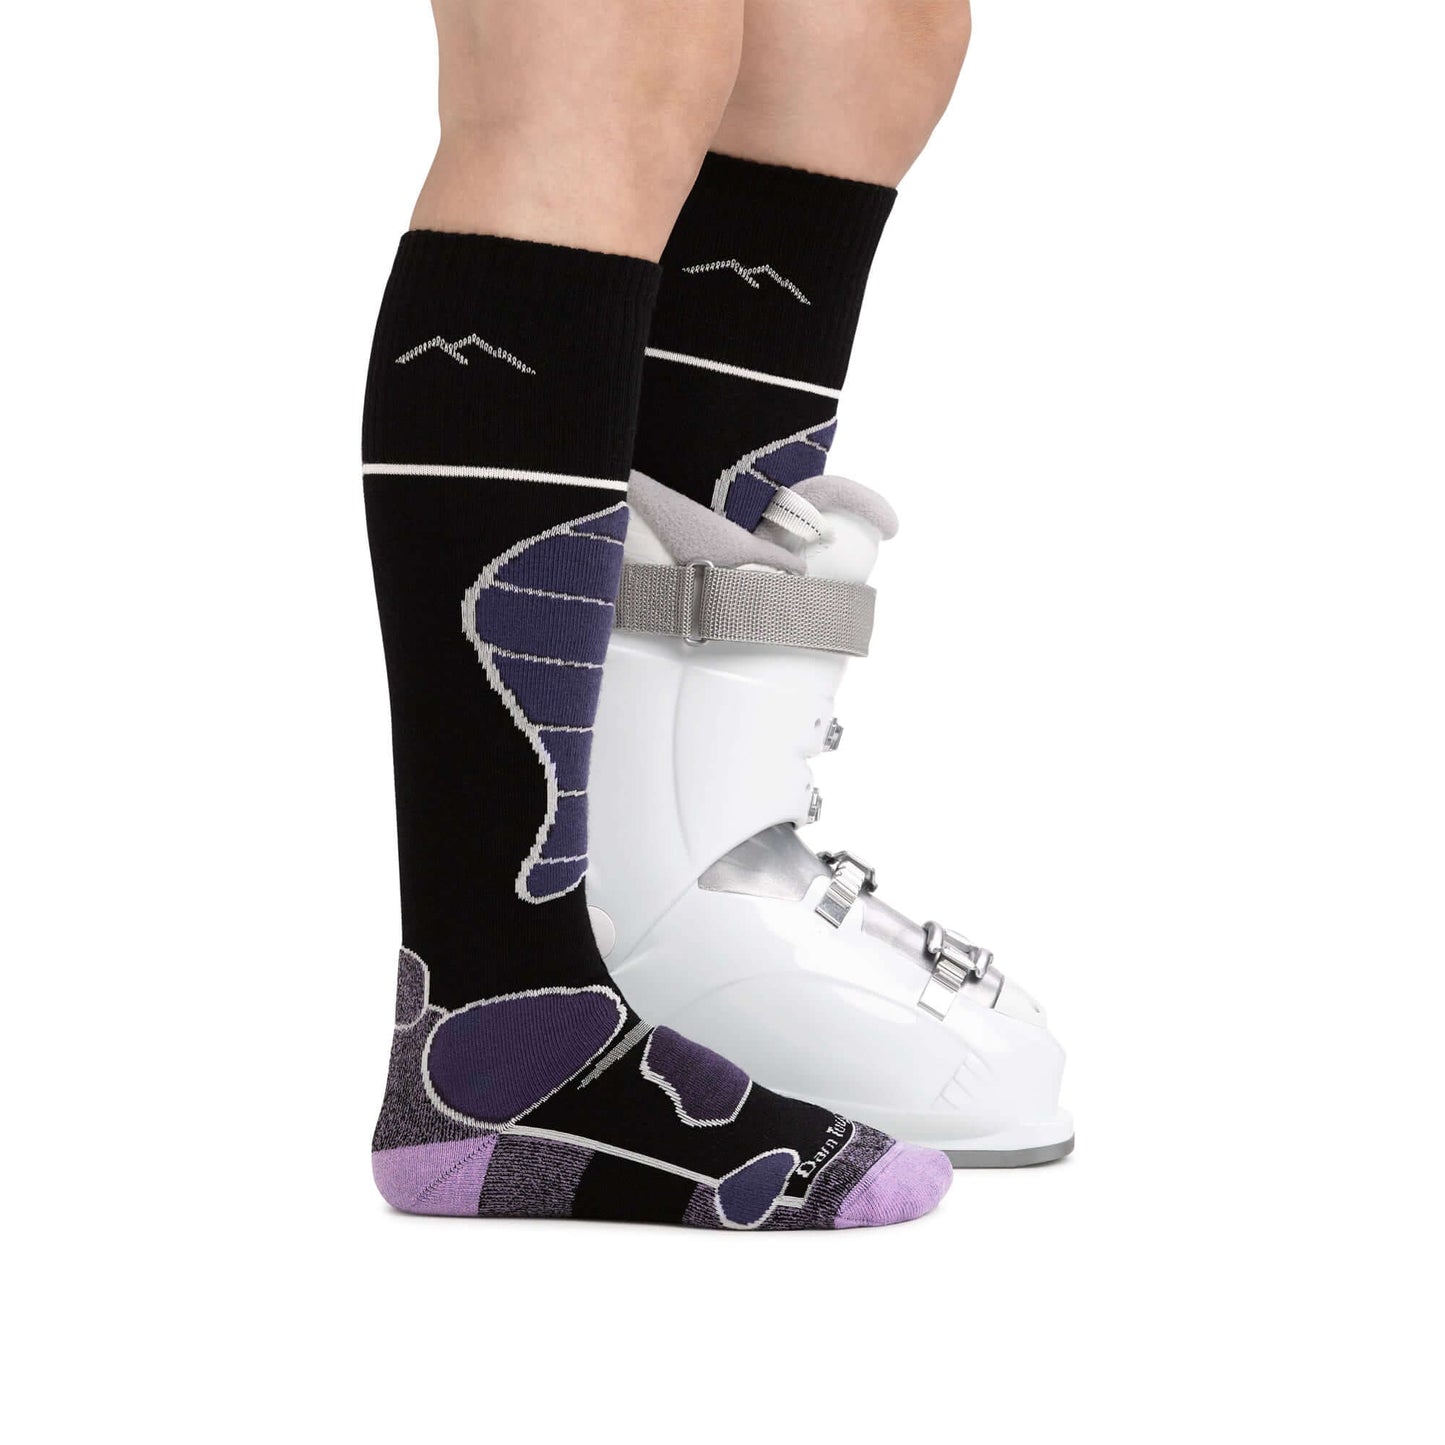 Darn Tough Calcetines de esquí/snow con acolchado. Mod. Function 5 1810 color Color: Black